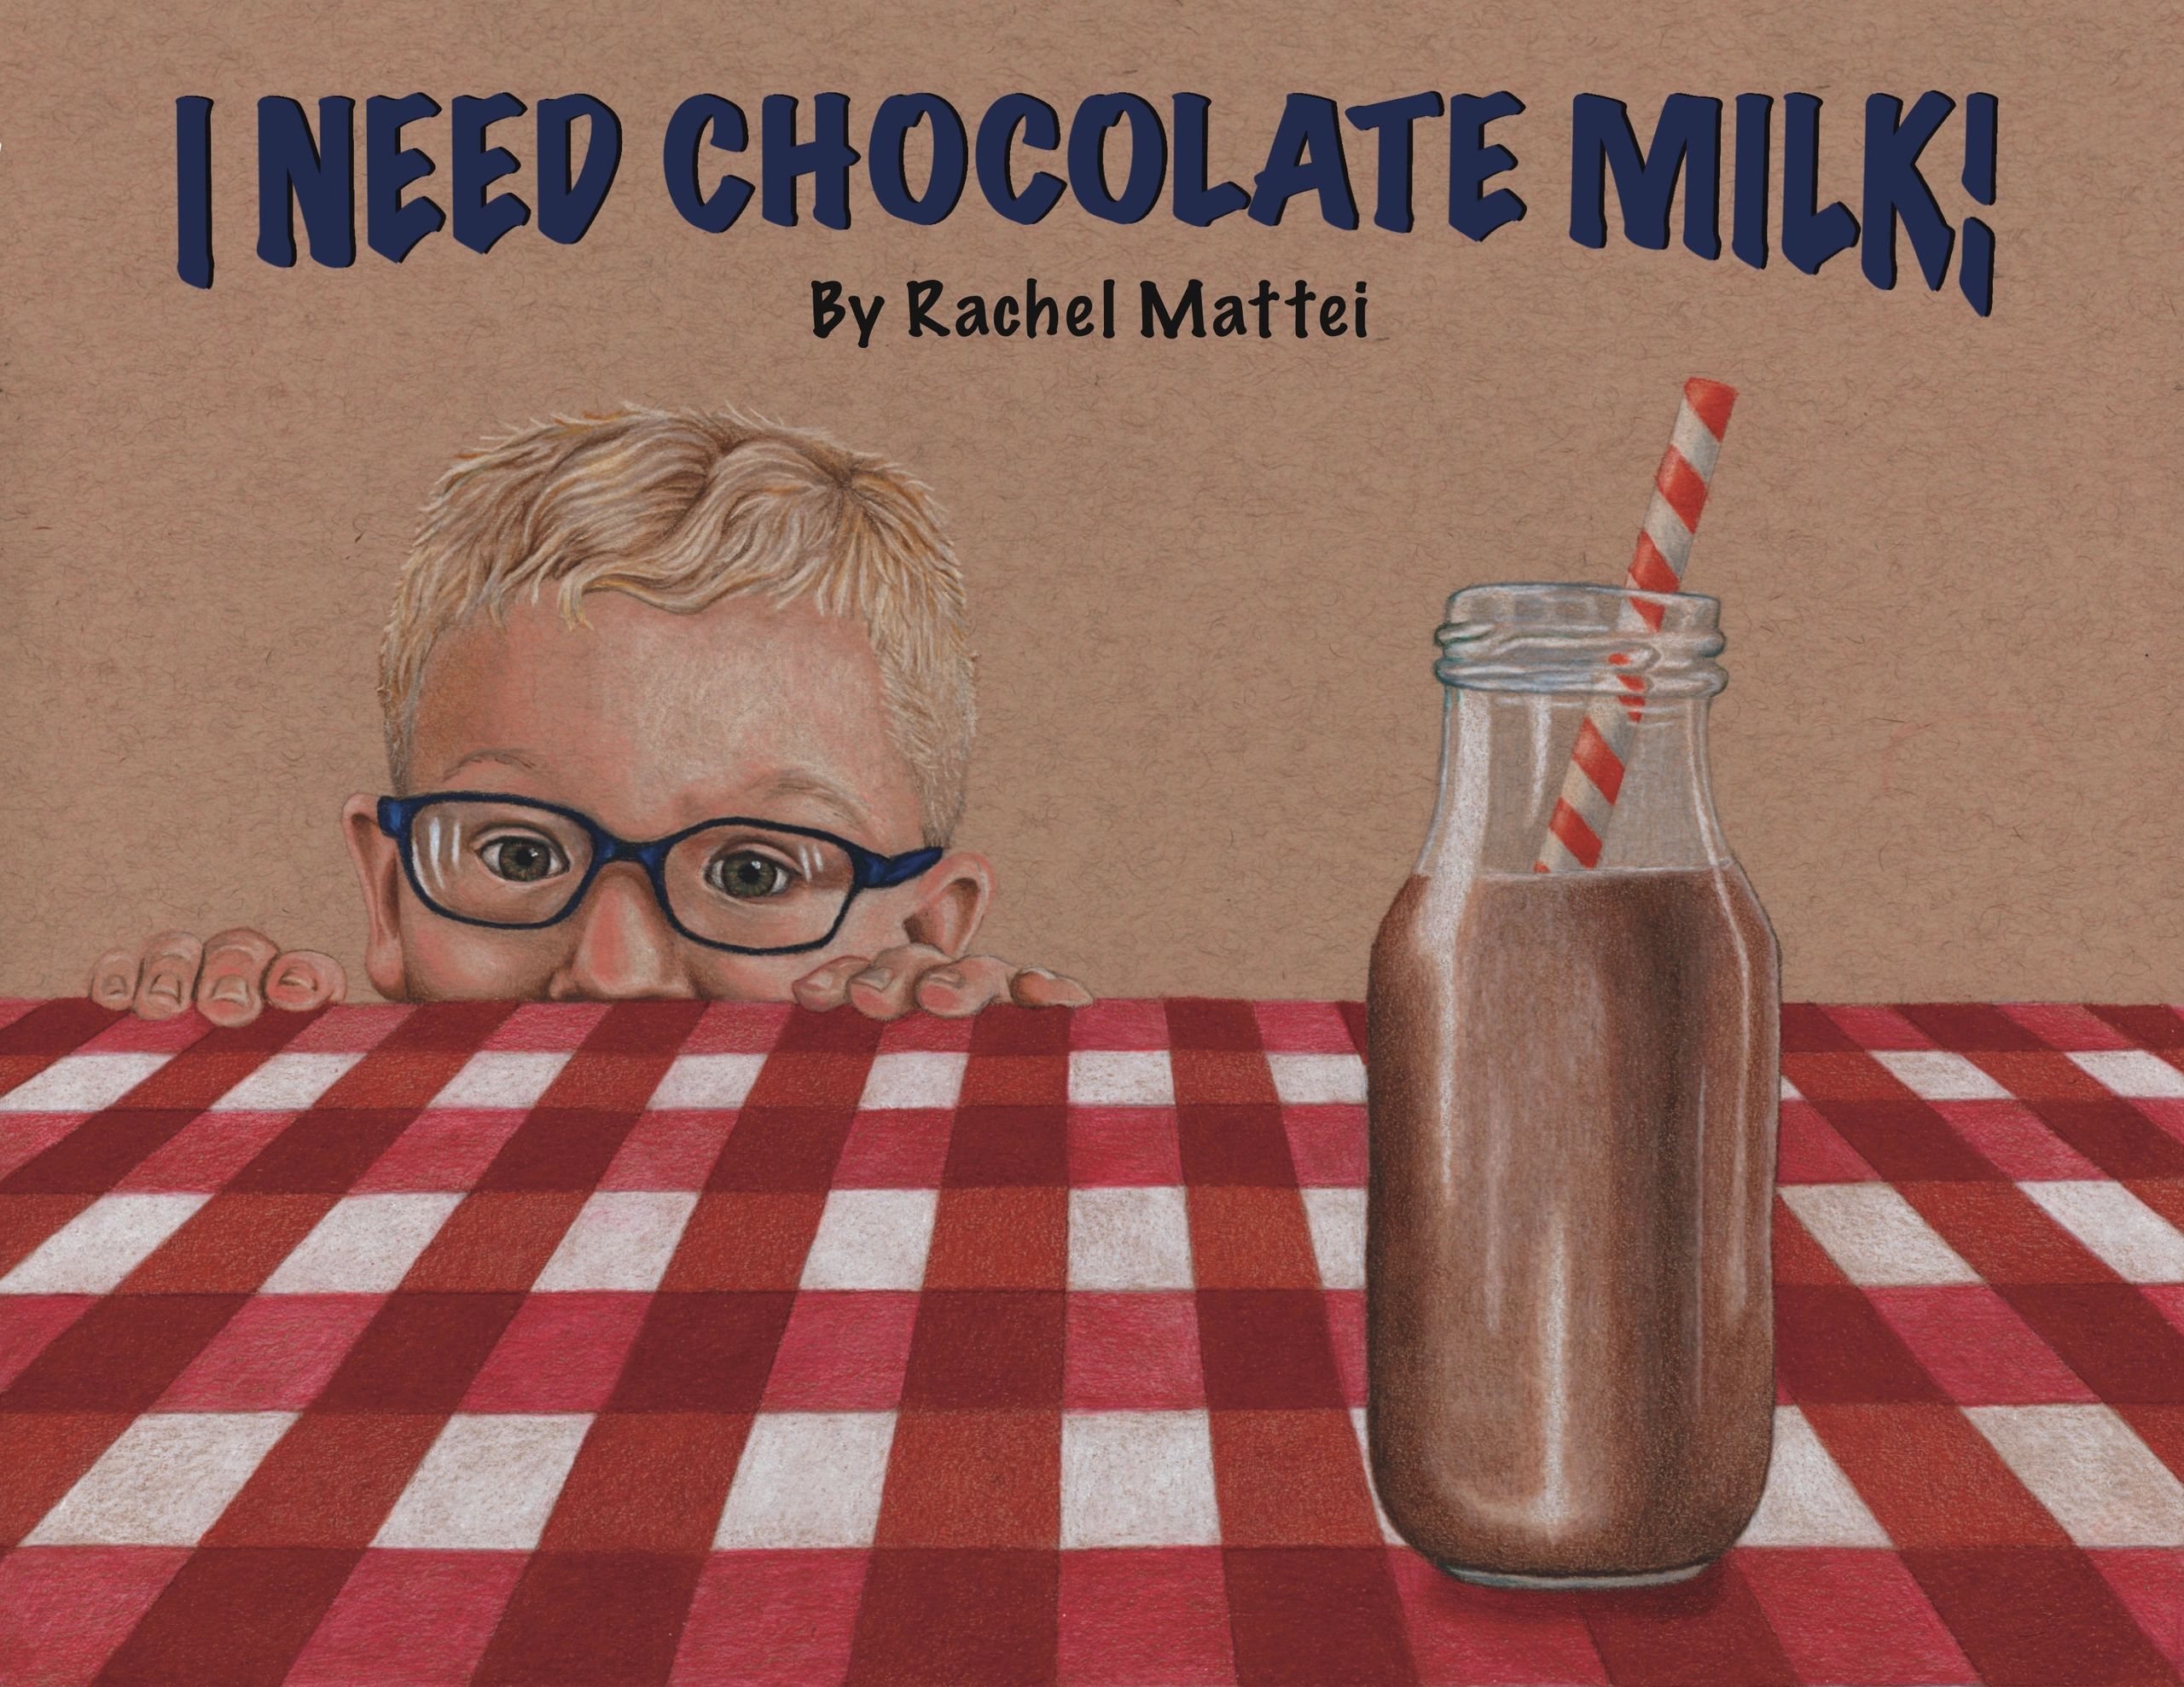 I Need Chocolate Milk! children's book